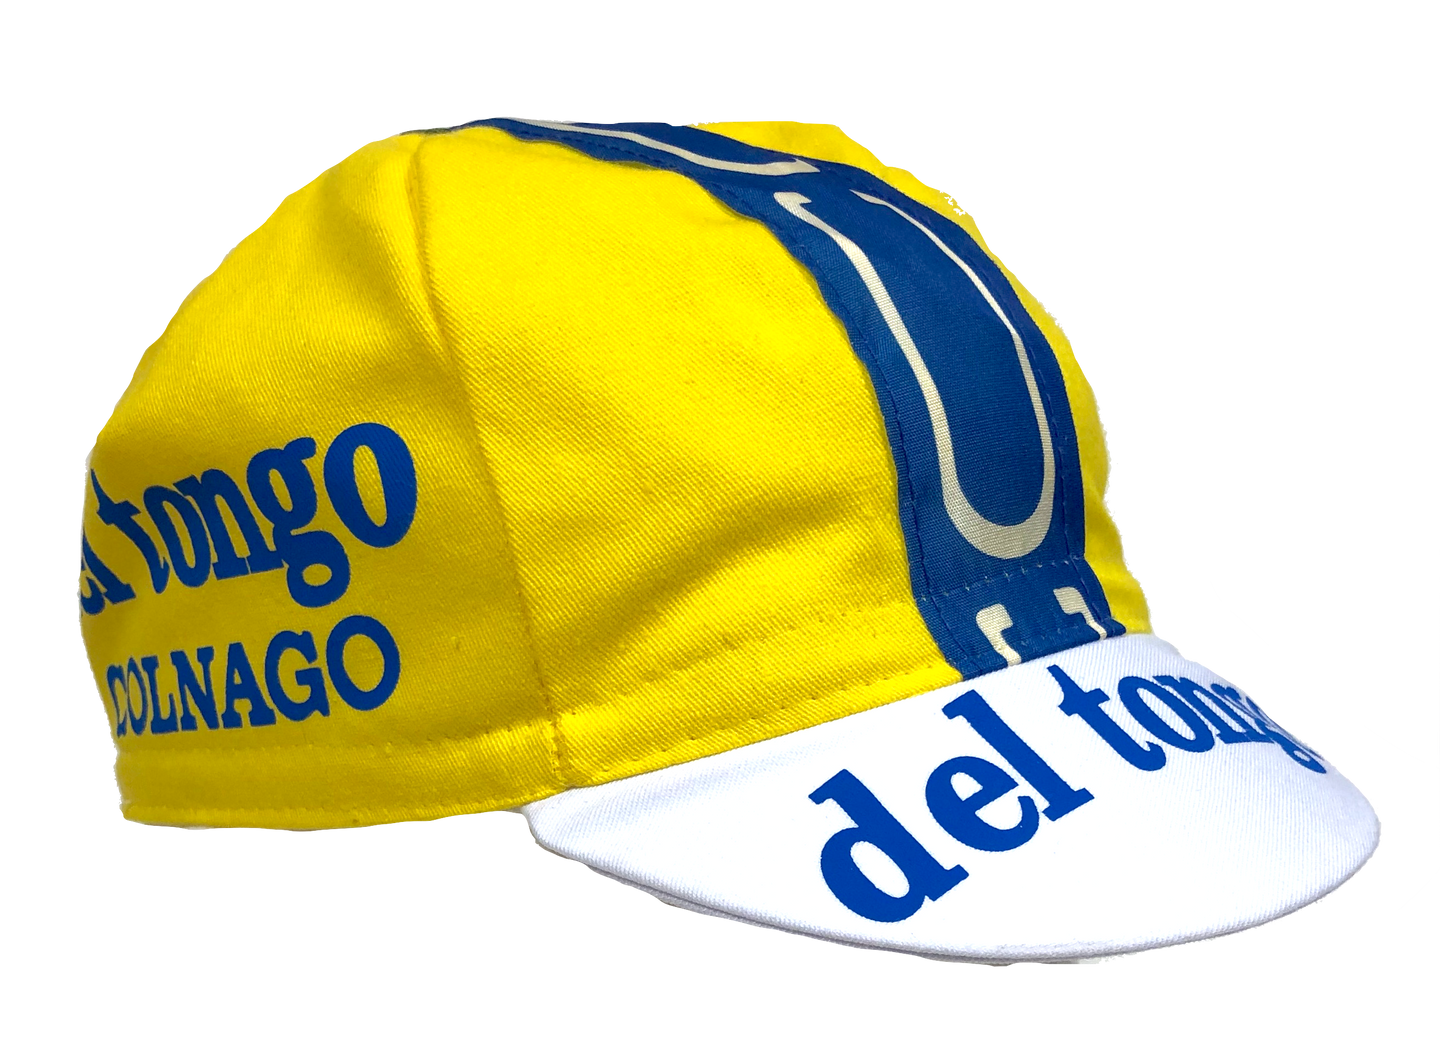 Del Tongo Colnago Vintage Professional Cycling Team Cap 